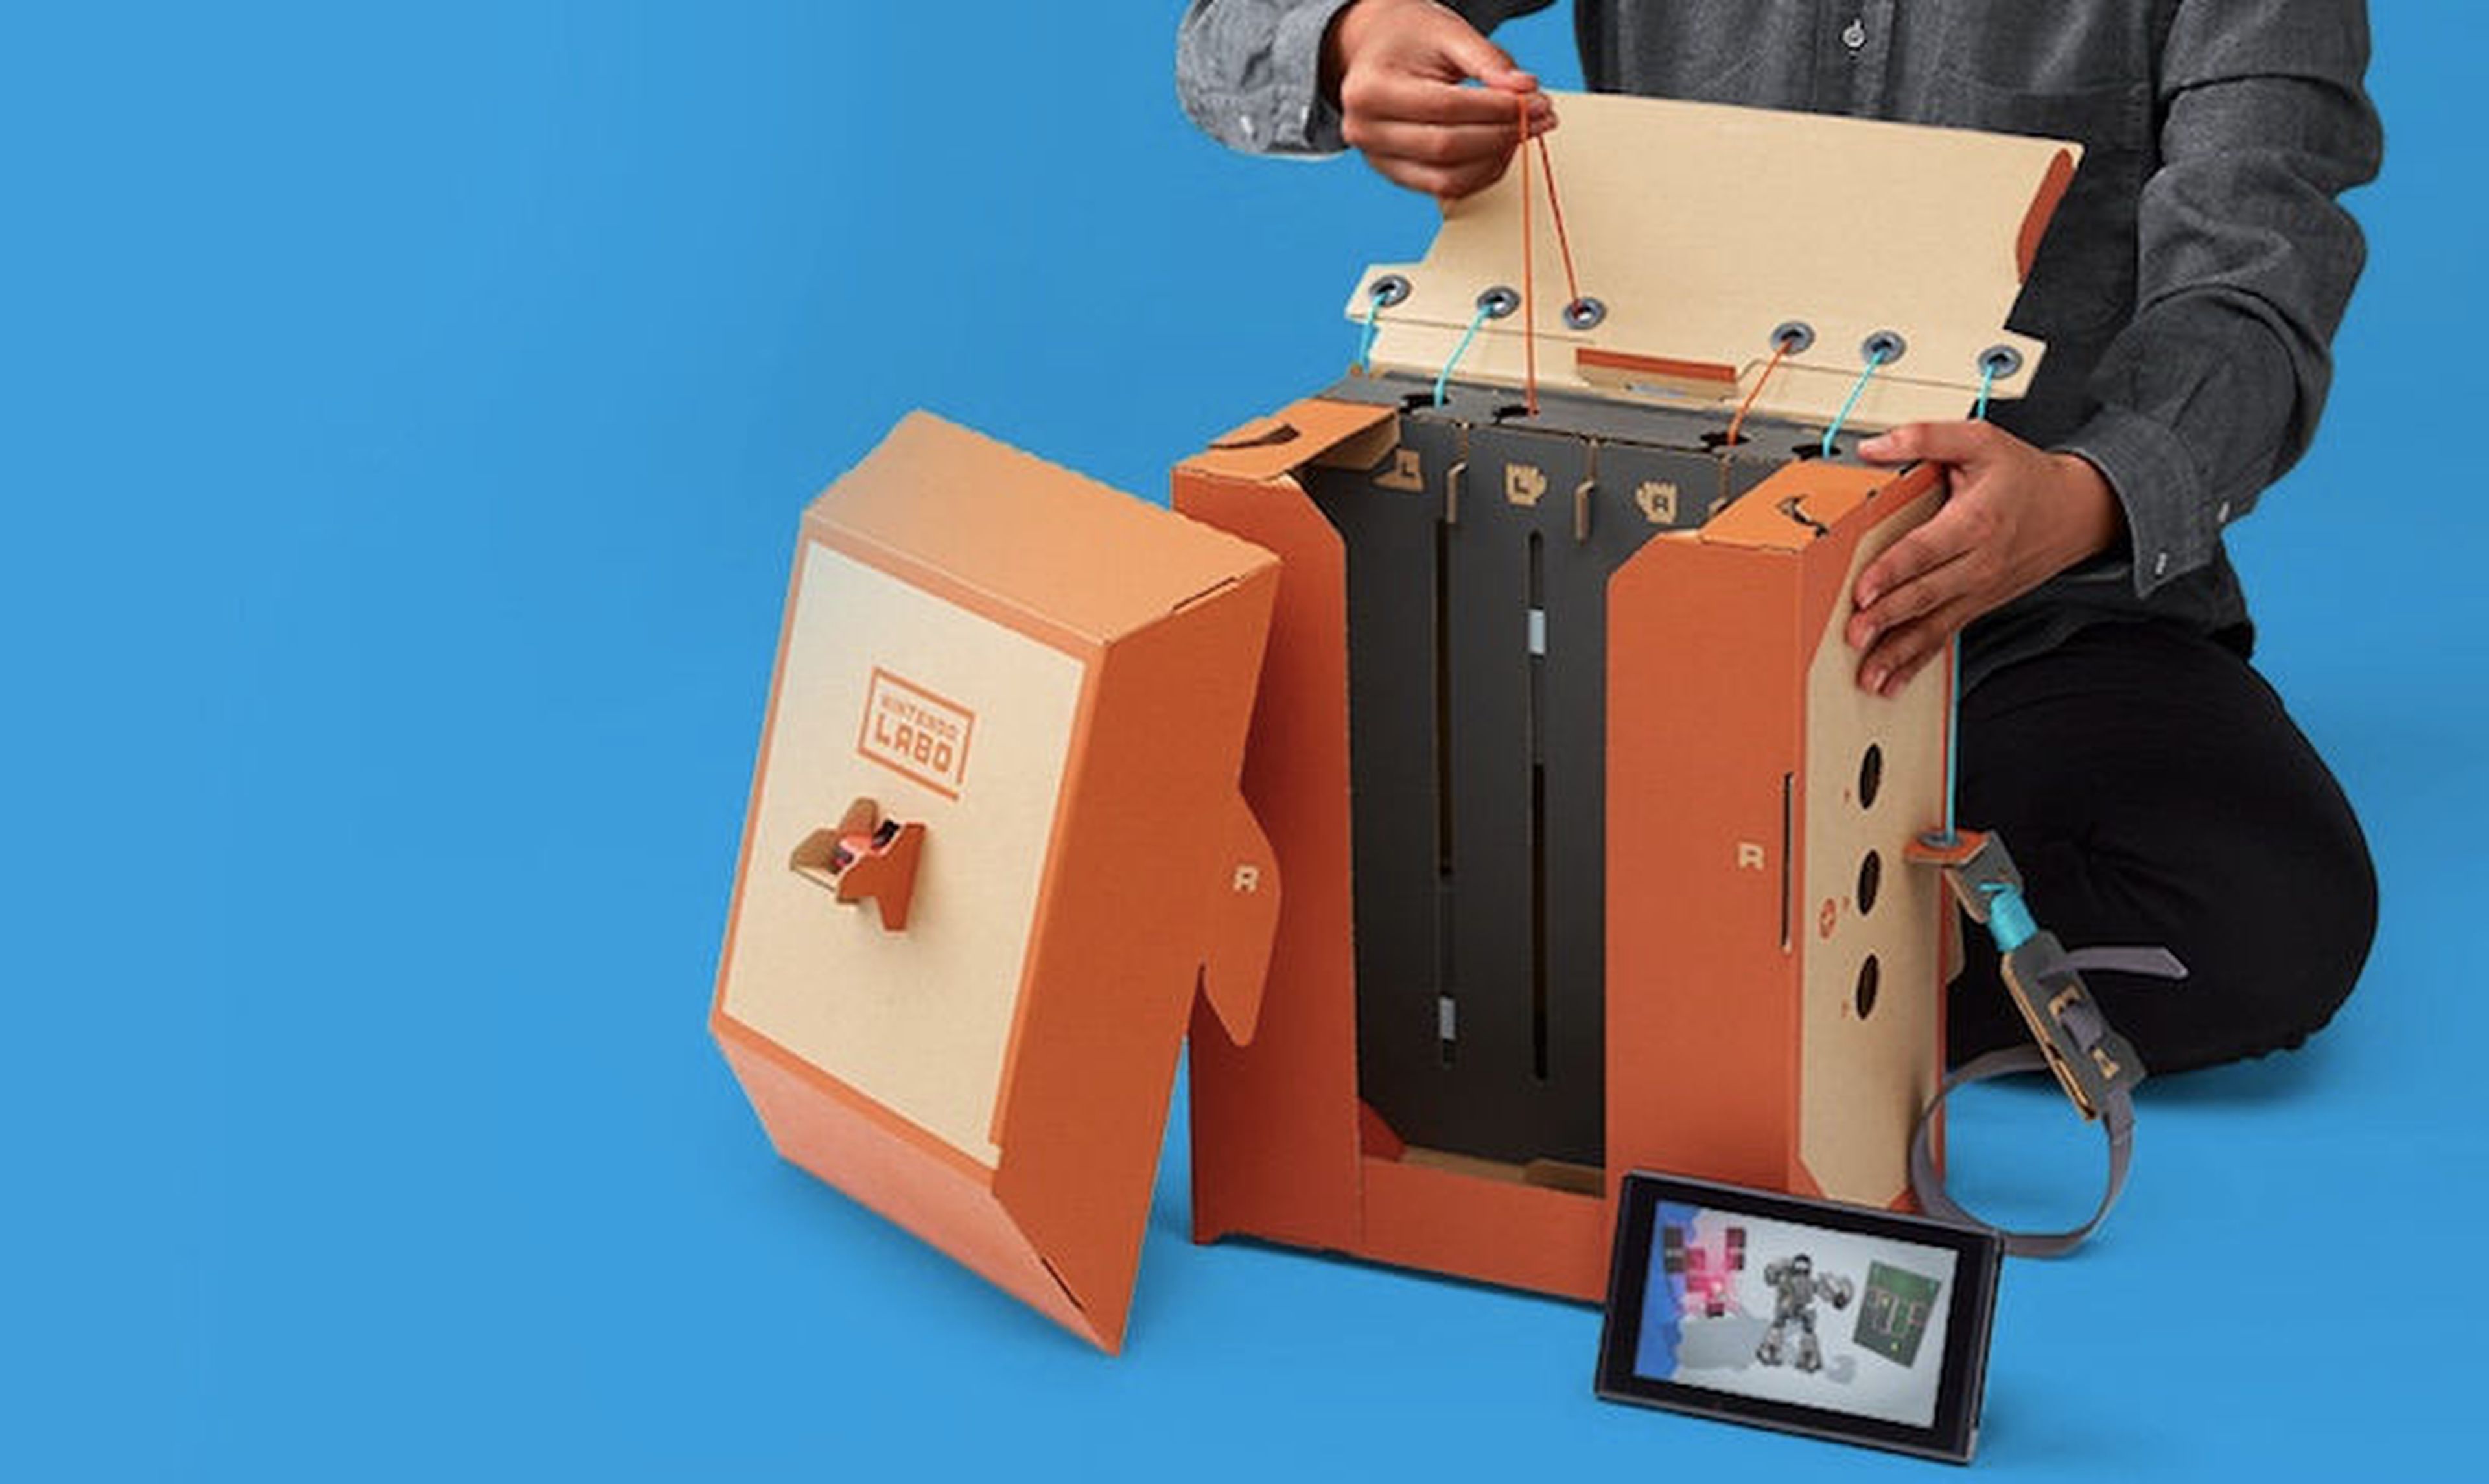 Fuera de Escarpa sarcoma Ya hemos jugado a Nintendo Labo Toy Con 2 - Robot Kit | Hobby Consolas